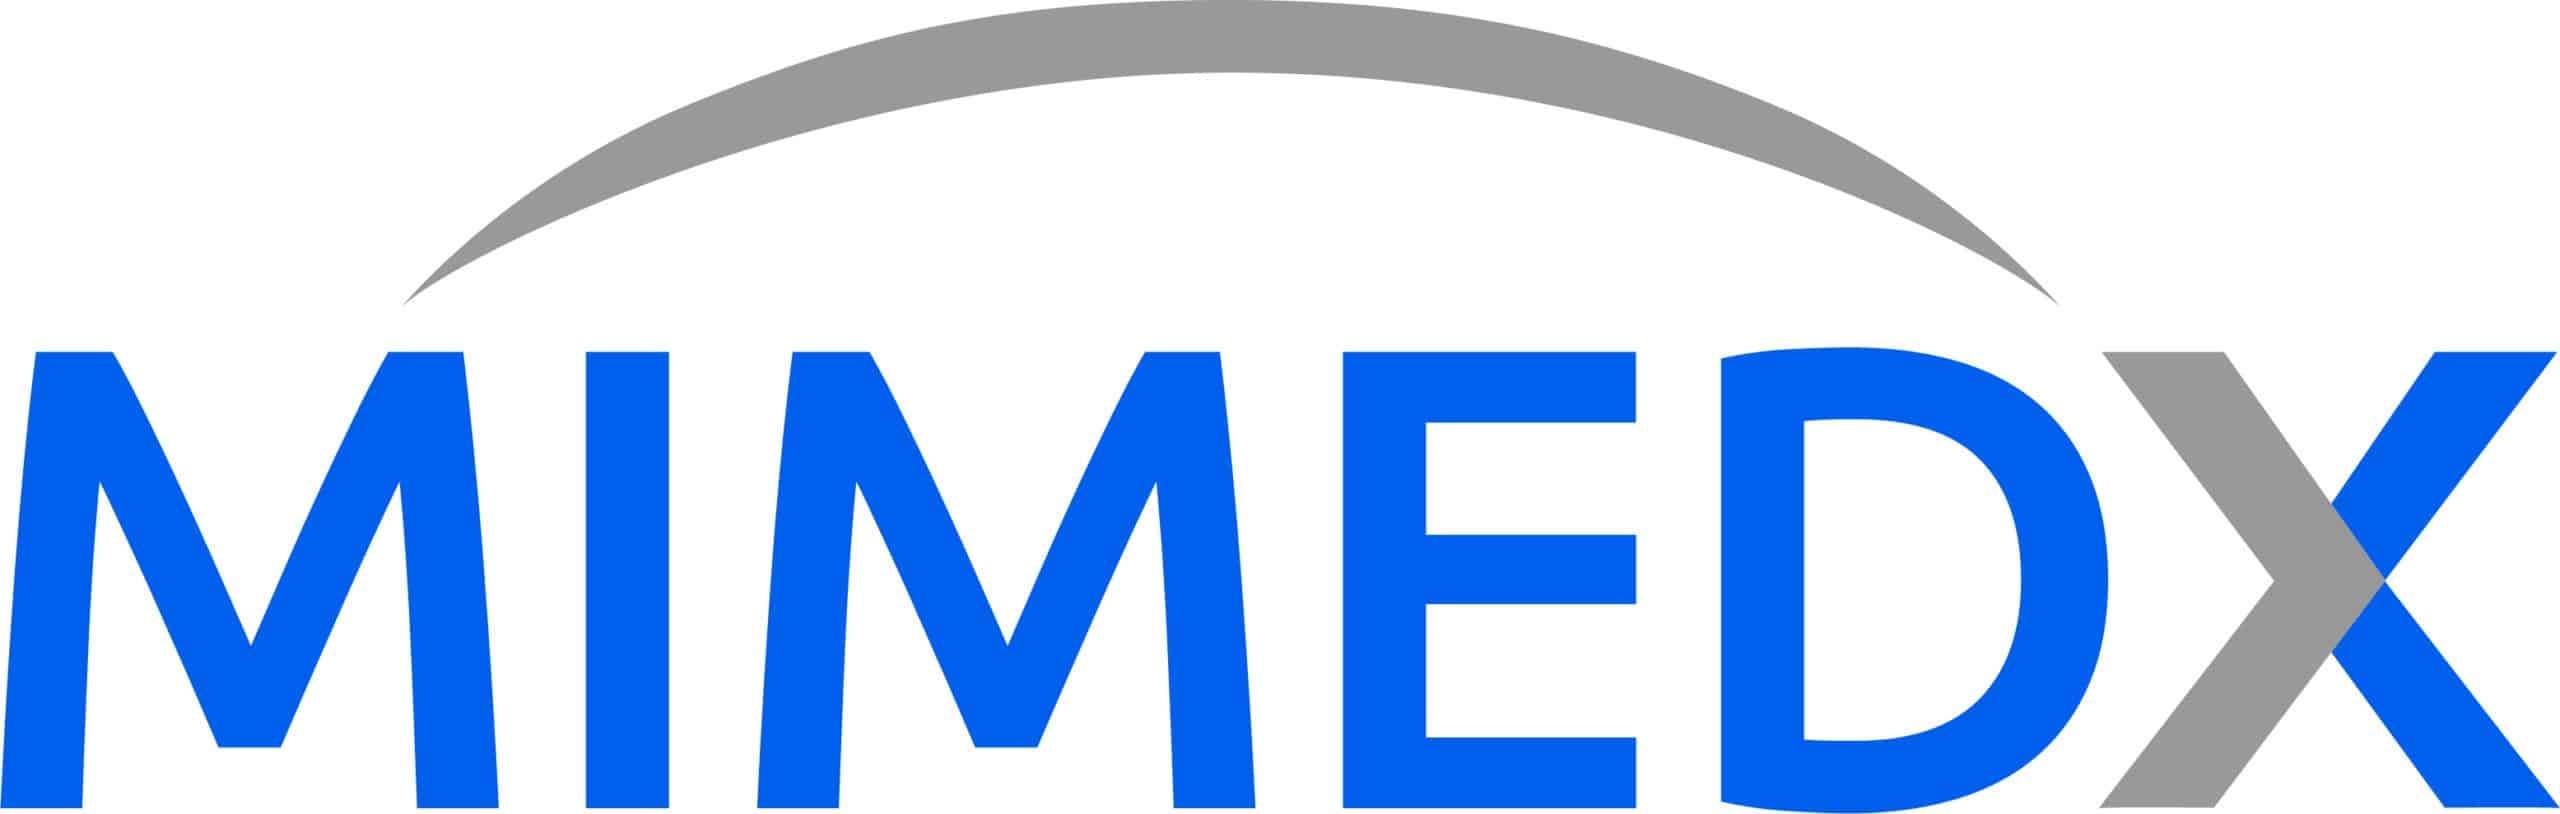 Mimedx-logo